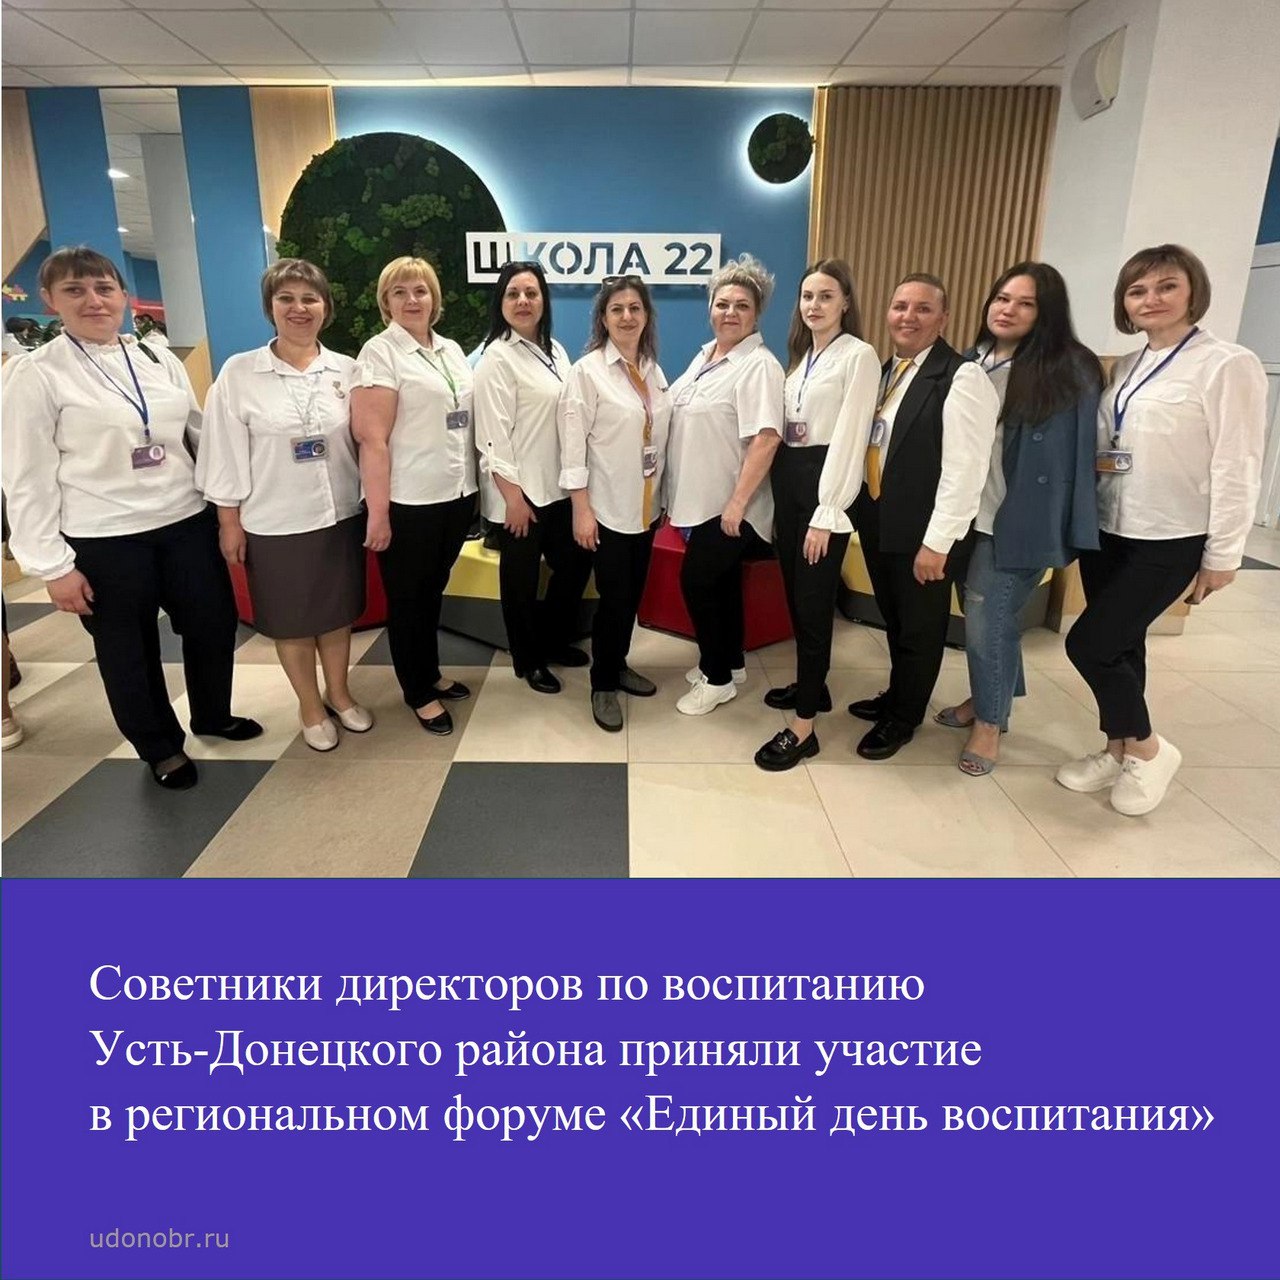 Советники директоров по воспитанию Усть-Донецкого района приняли участие в региональном форуме «Единый день воспитания»